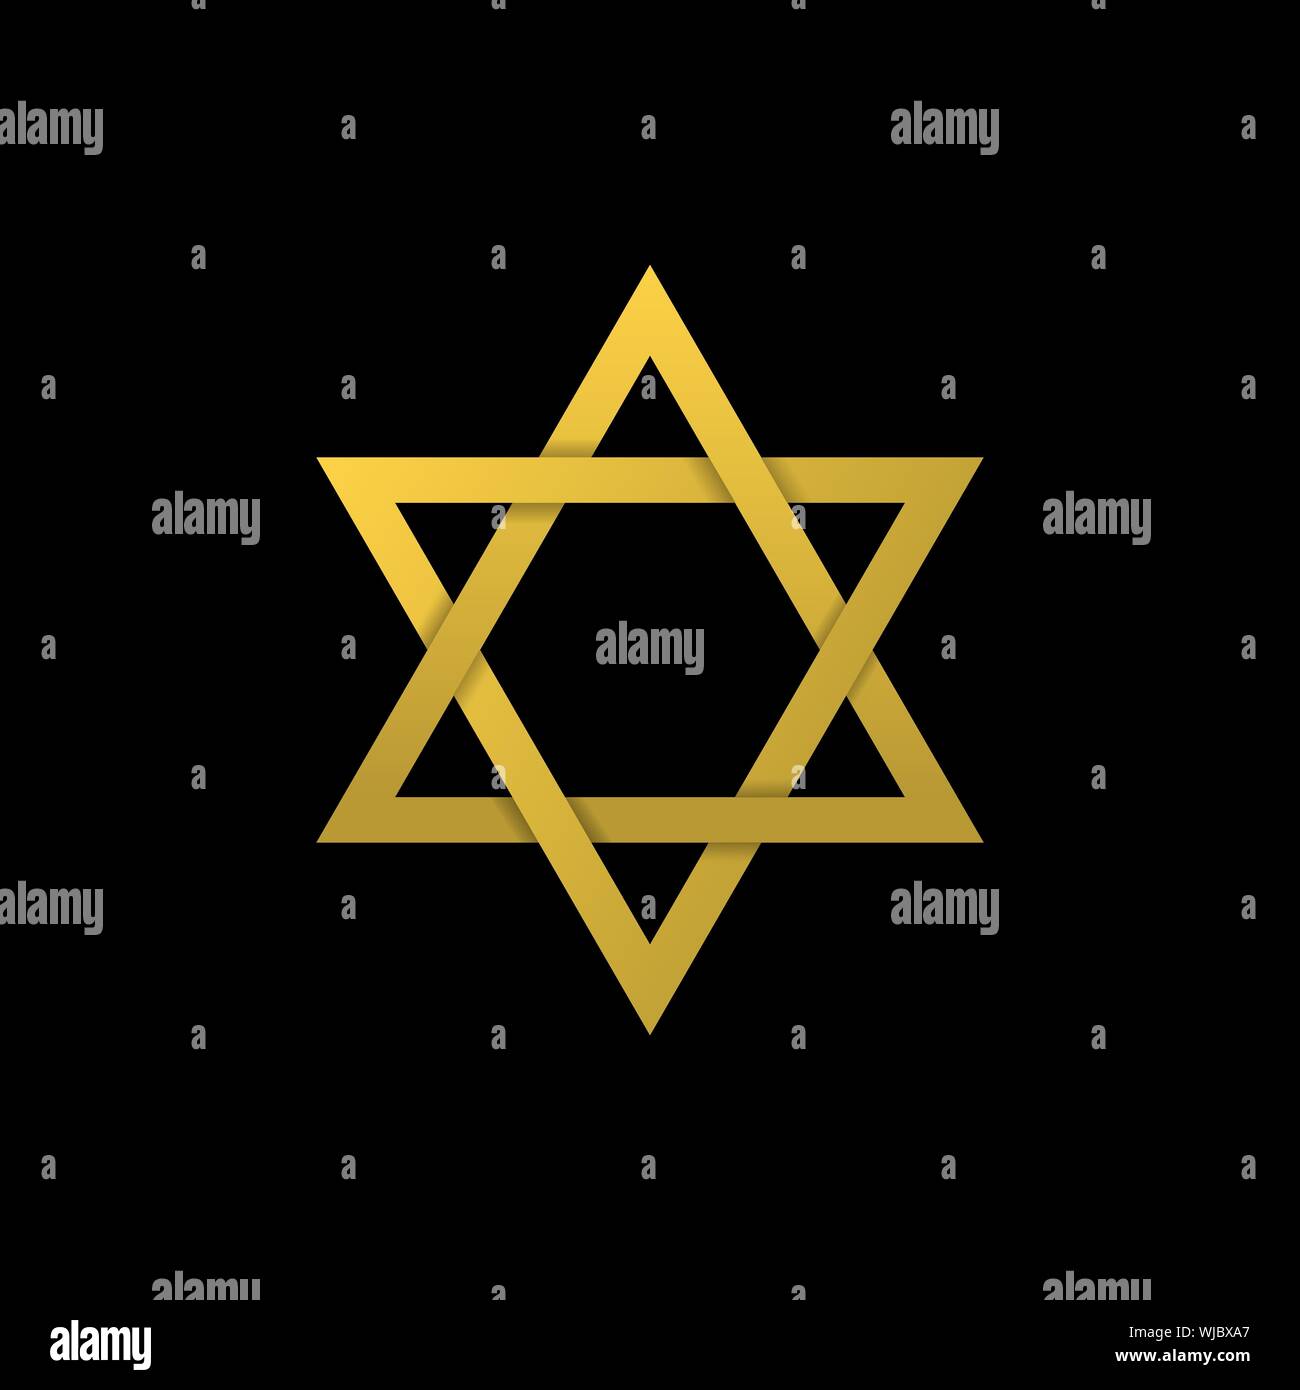 Golden Star di David icona. Generalmente riconosciuto simbolo della moderna identità ebraica e il Giudaismo, simbolo di Israele Illustrazione Vettoriale